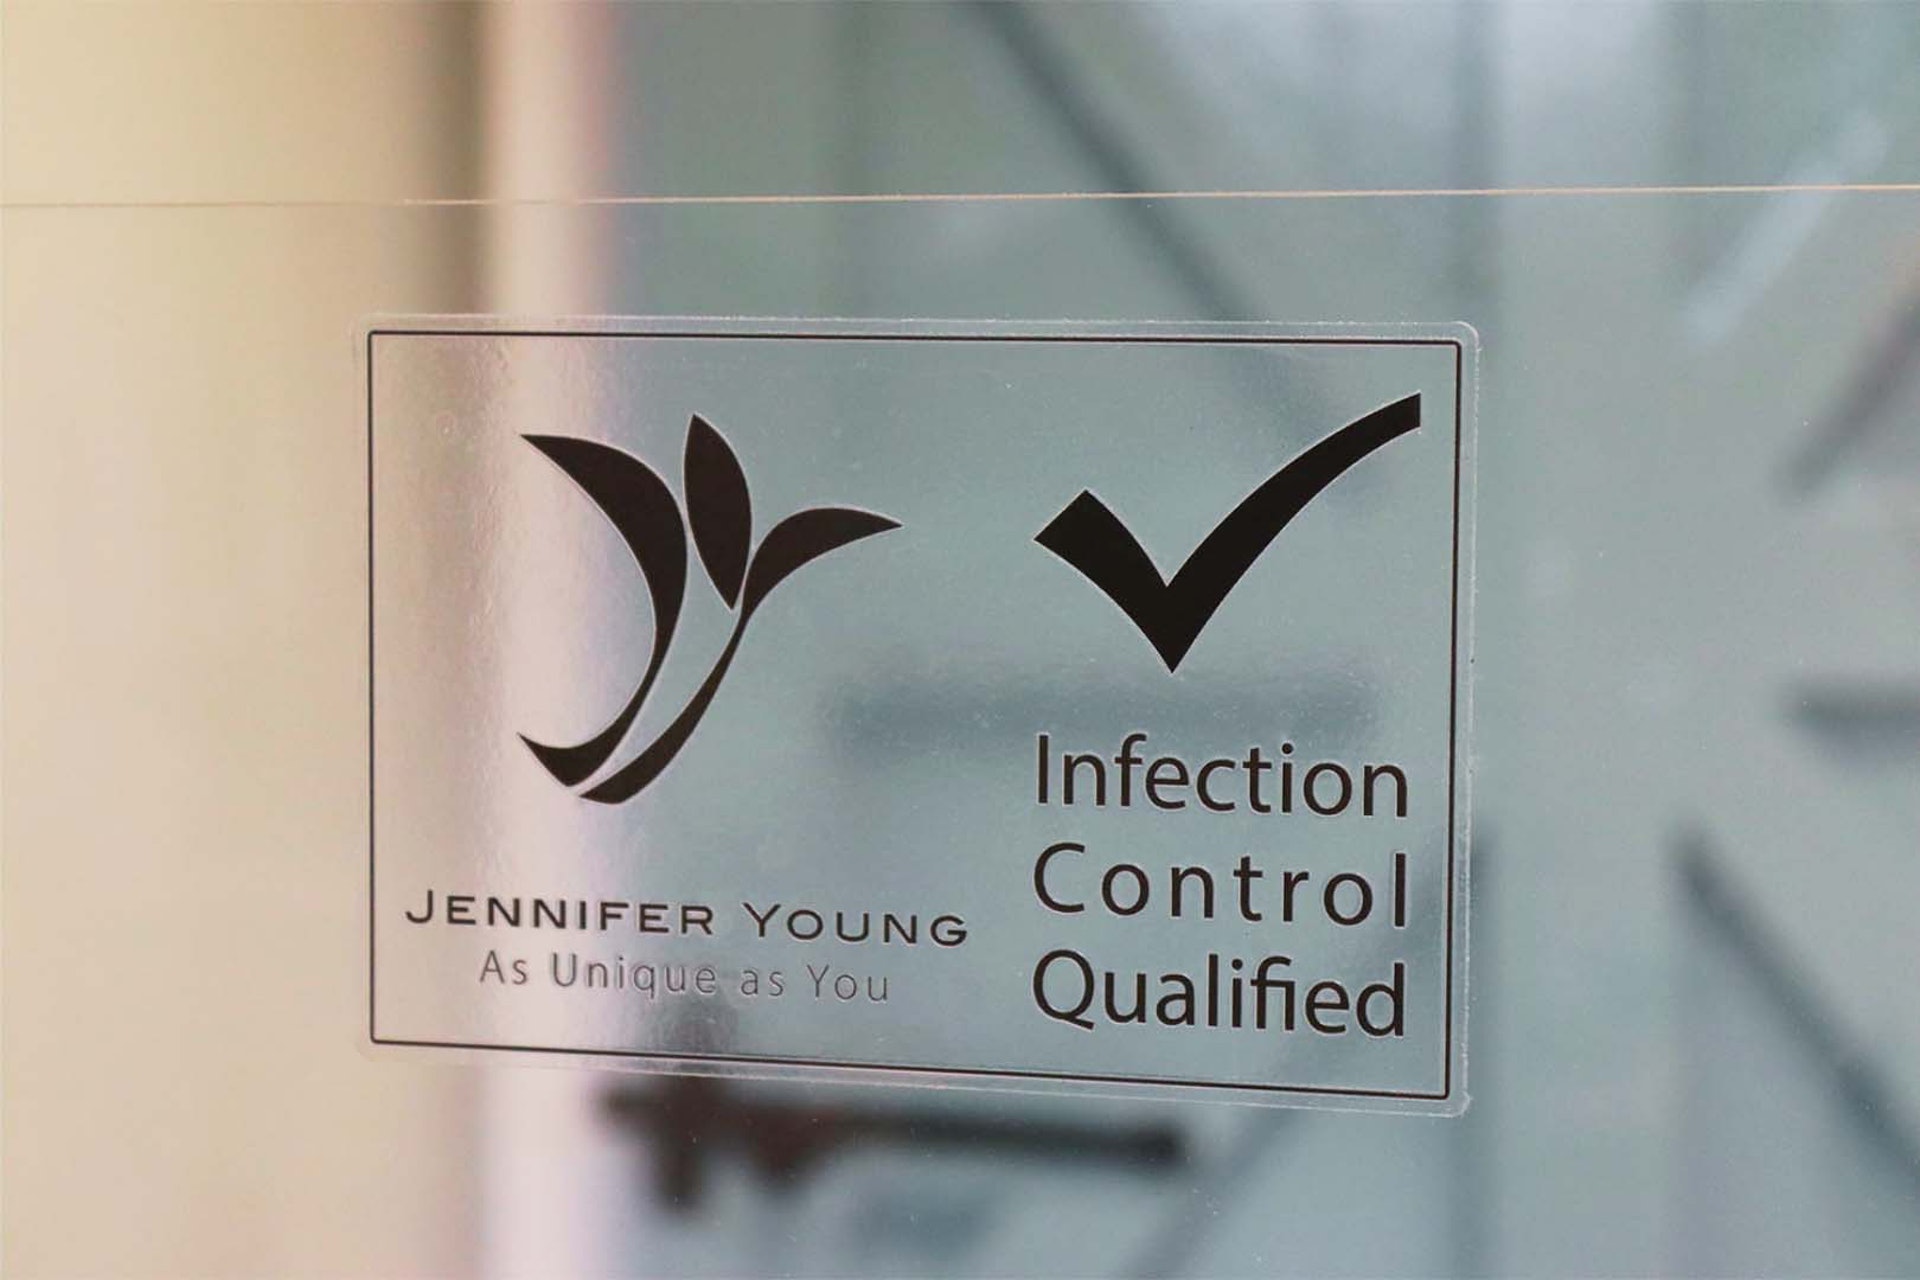 詹妮弗成立品牌「珍妍雅Jennifer Young」，並命名為「衛美 Defiant Beauty」。